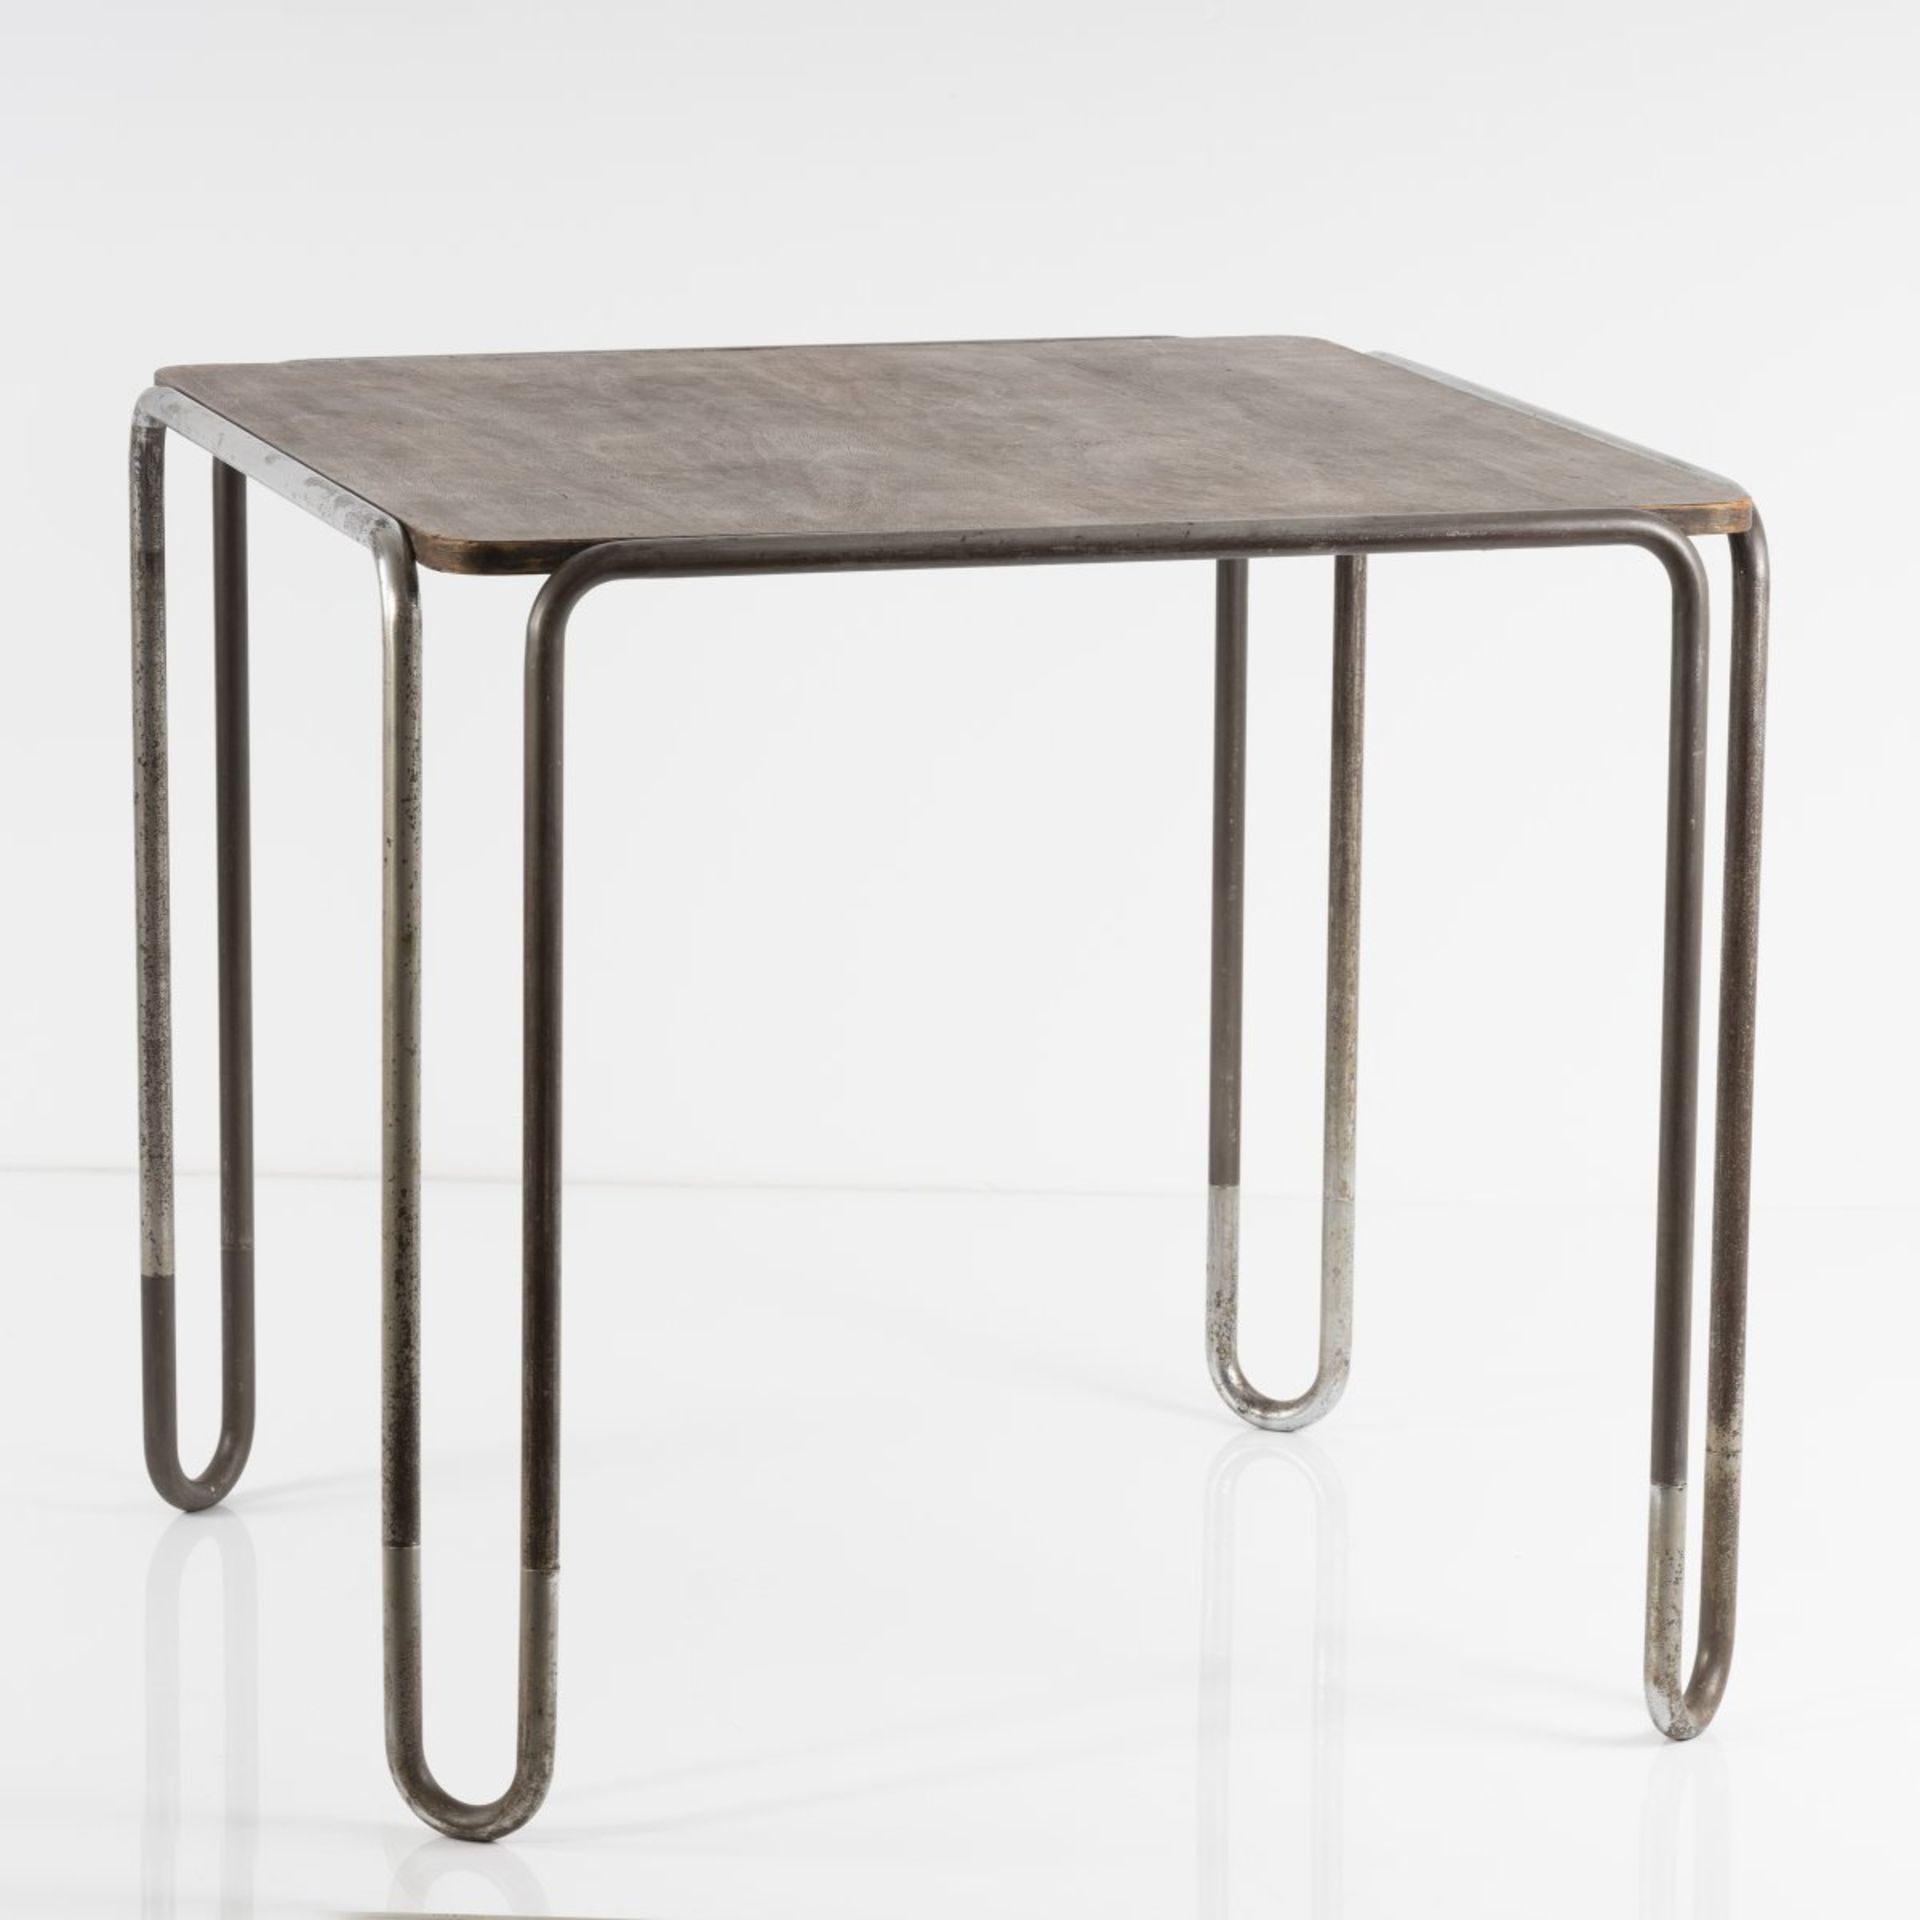 Marcel Breuer , Tisch 'B 10', 1927 Tisch 'B 10', 1927 H. 67,5 x 74 x 74,5 cm; Rohr Ø 2 cm.Thonet, - Bild 7 aus 7